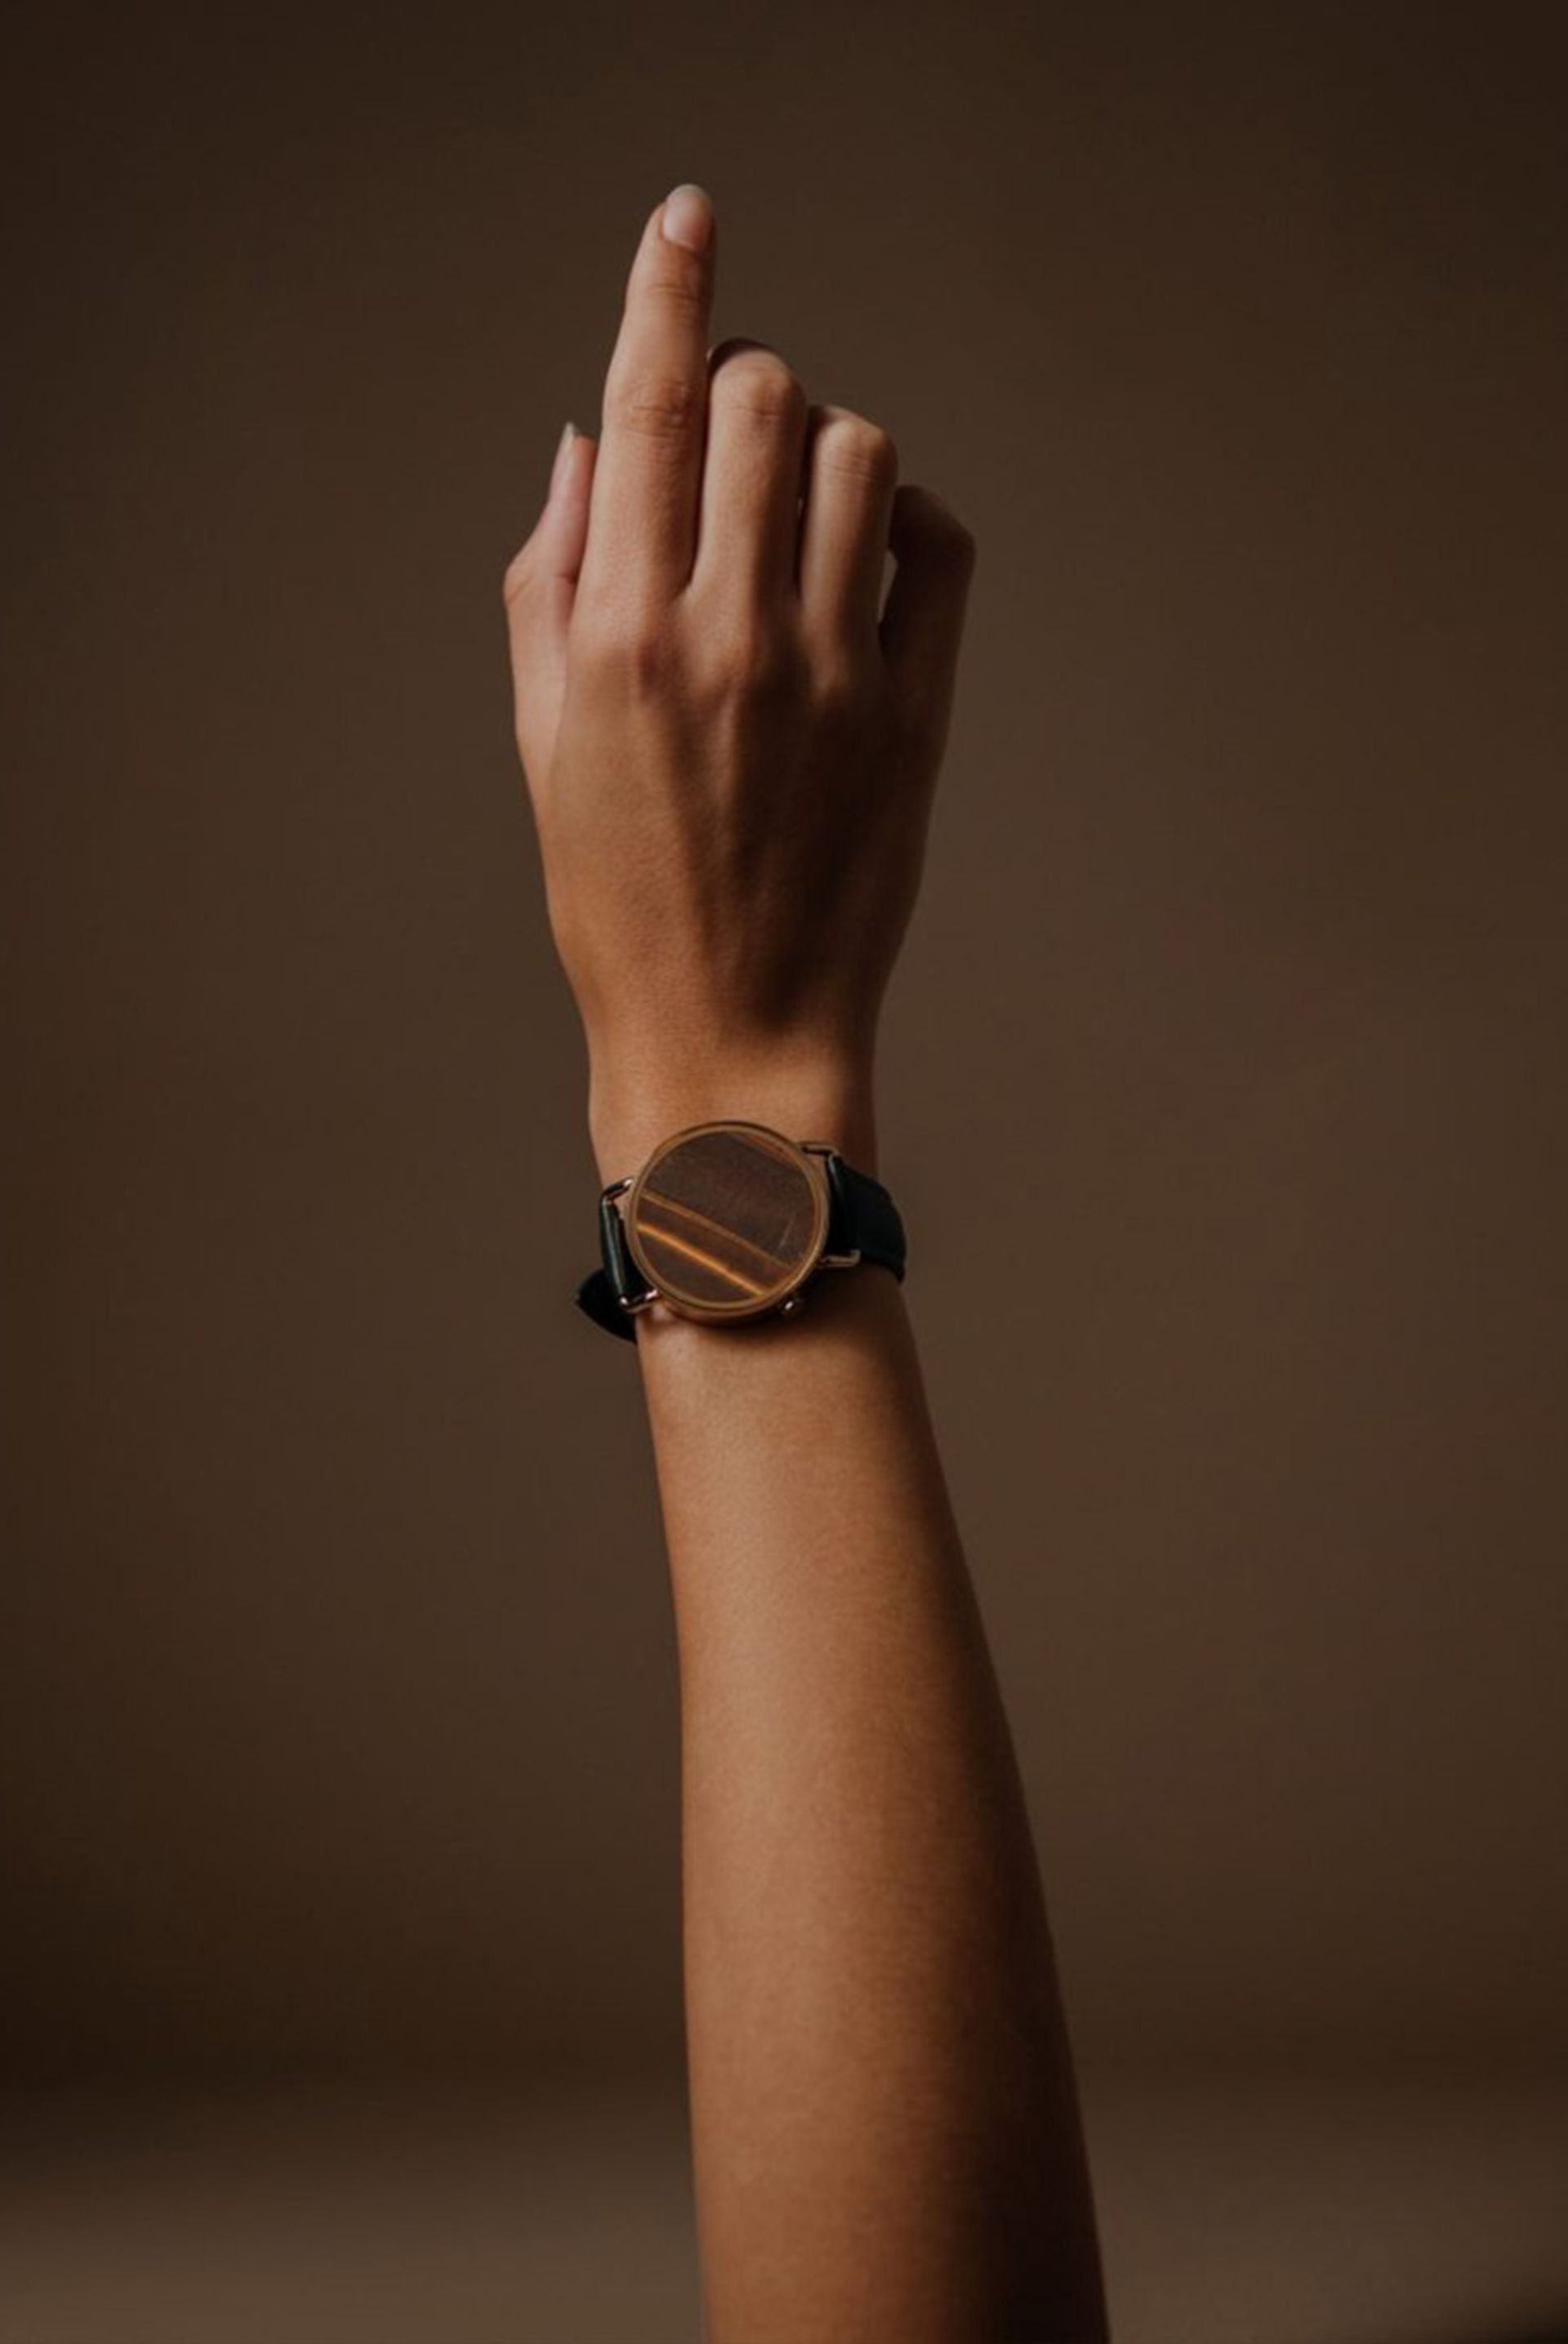 نمای ساعت هوشمند Nowatch در دست یک زن